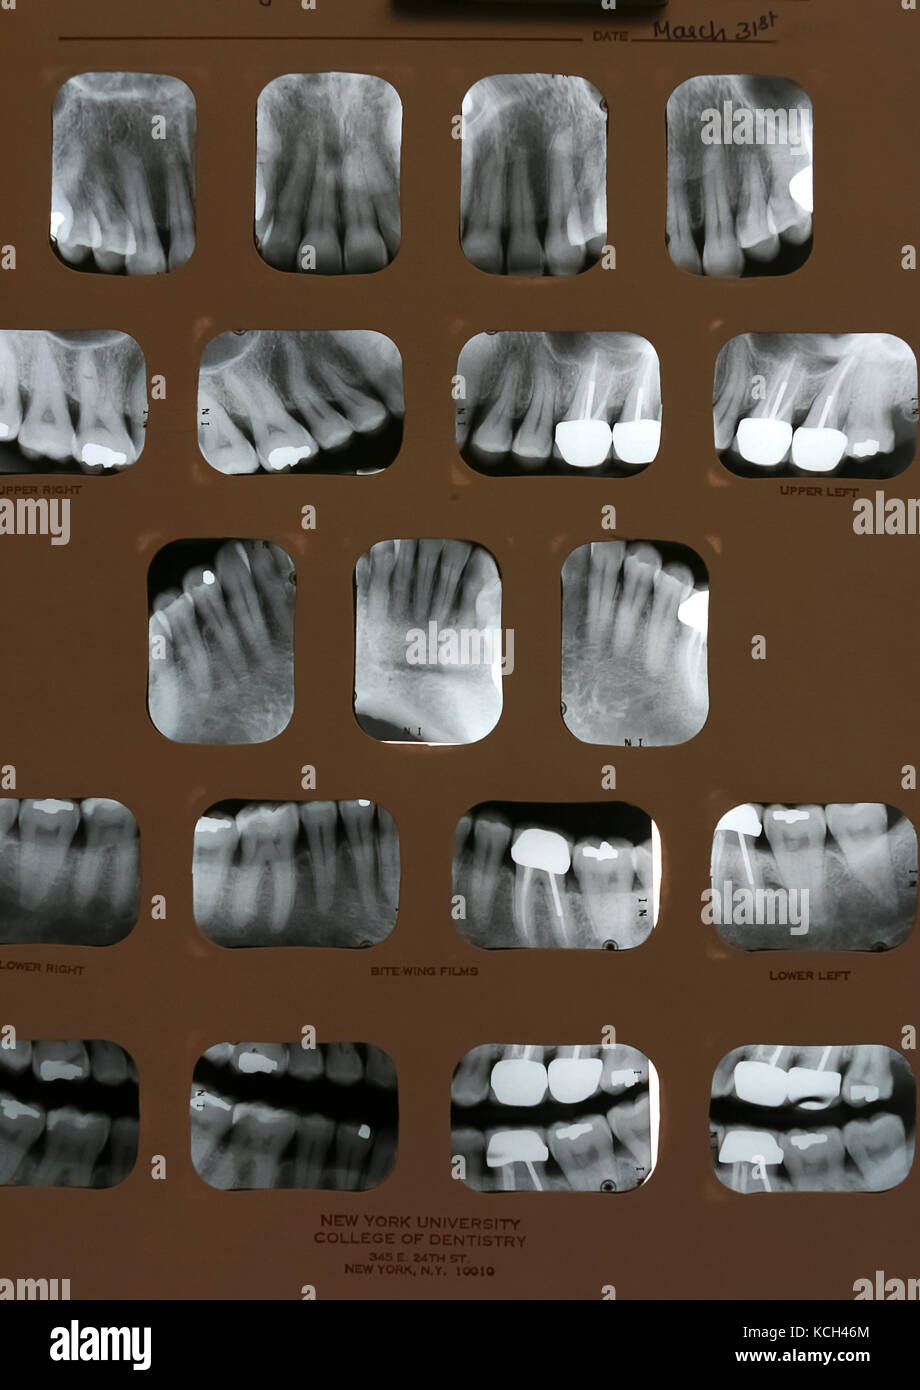 Les radiographies dentaires (la bouche pleine). Films montrent gommes de recul et de nombreux cours des canaux radiculaires avec des couronnes. Banque D'Images